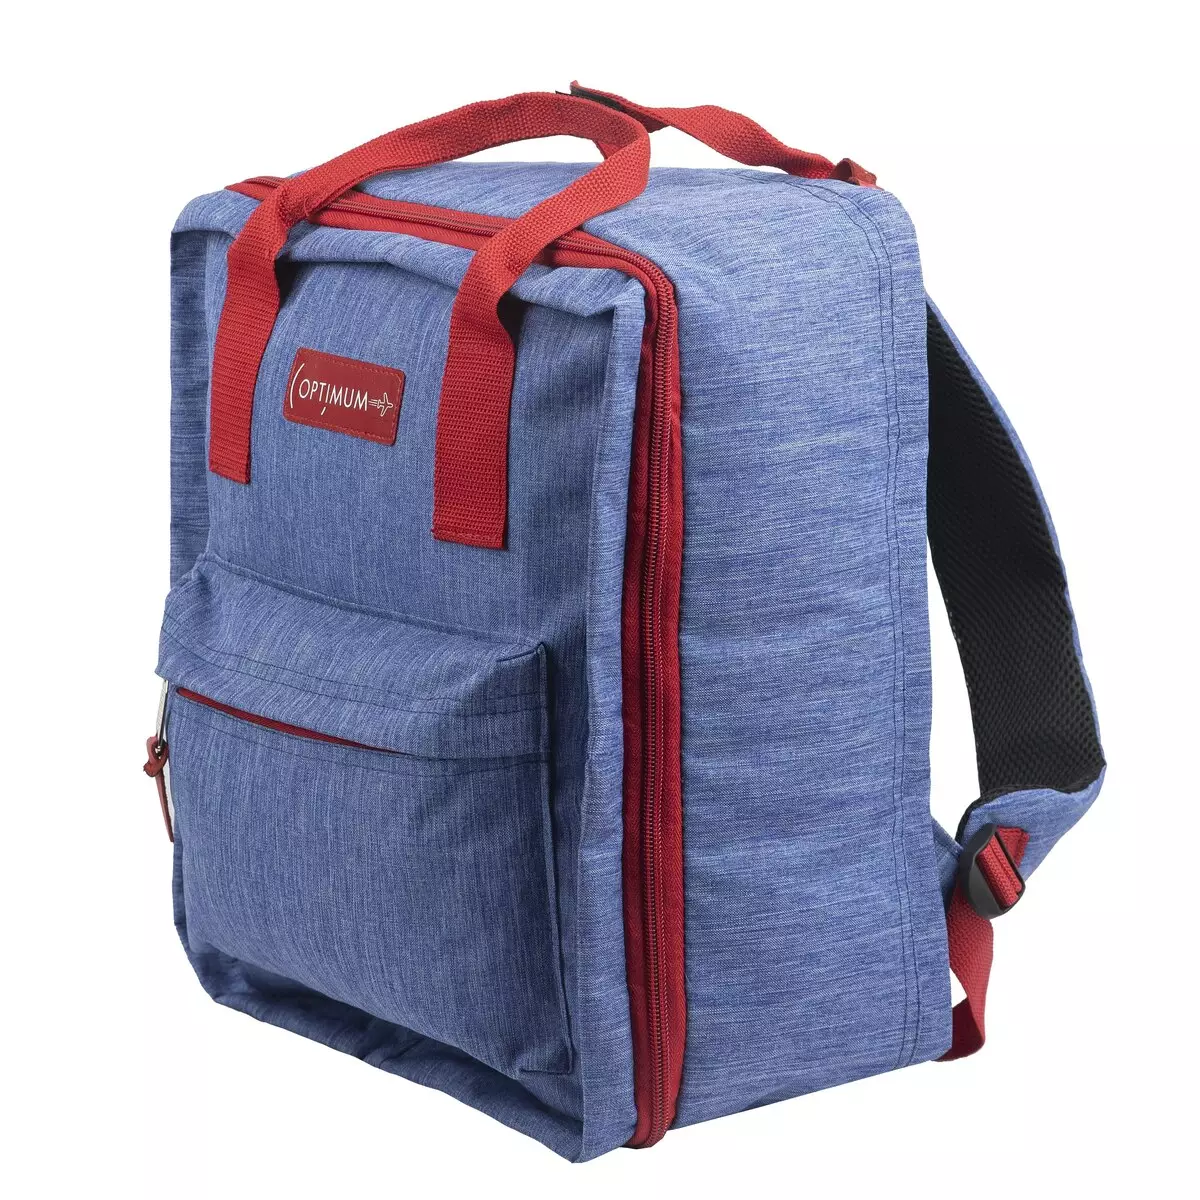 ხელის ჩანთა backpack: ითვლება backpack მოგზაურობის სახელმძღვანელო loop თვითმფრინავი? ზომები. რა შეიძლება დაიბადოს და რა უნდა გაიაროს ბარგის? 15346_6